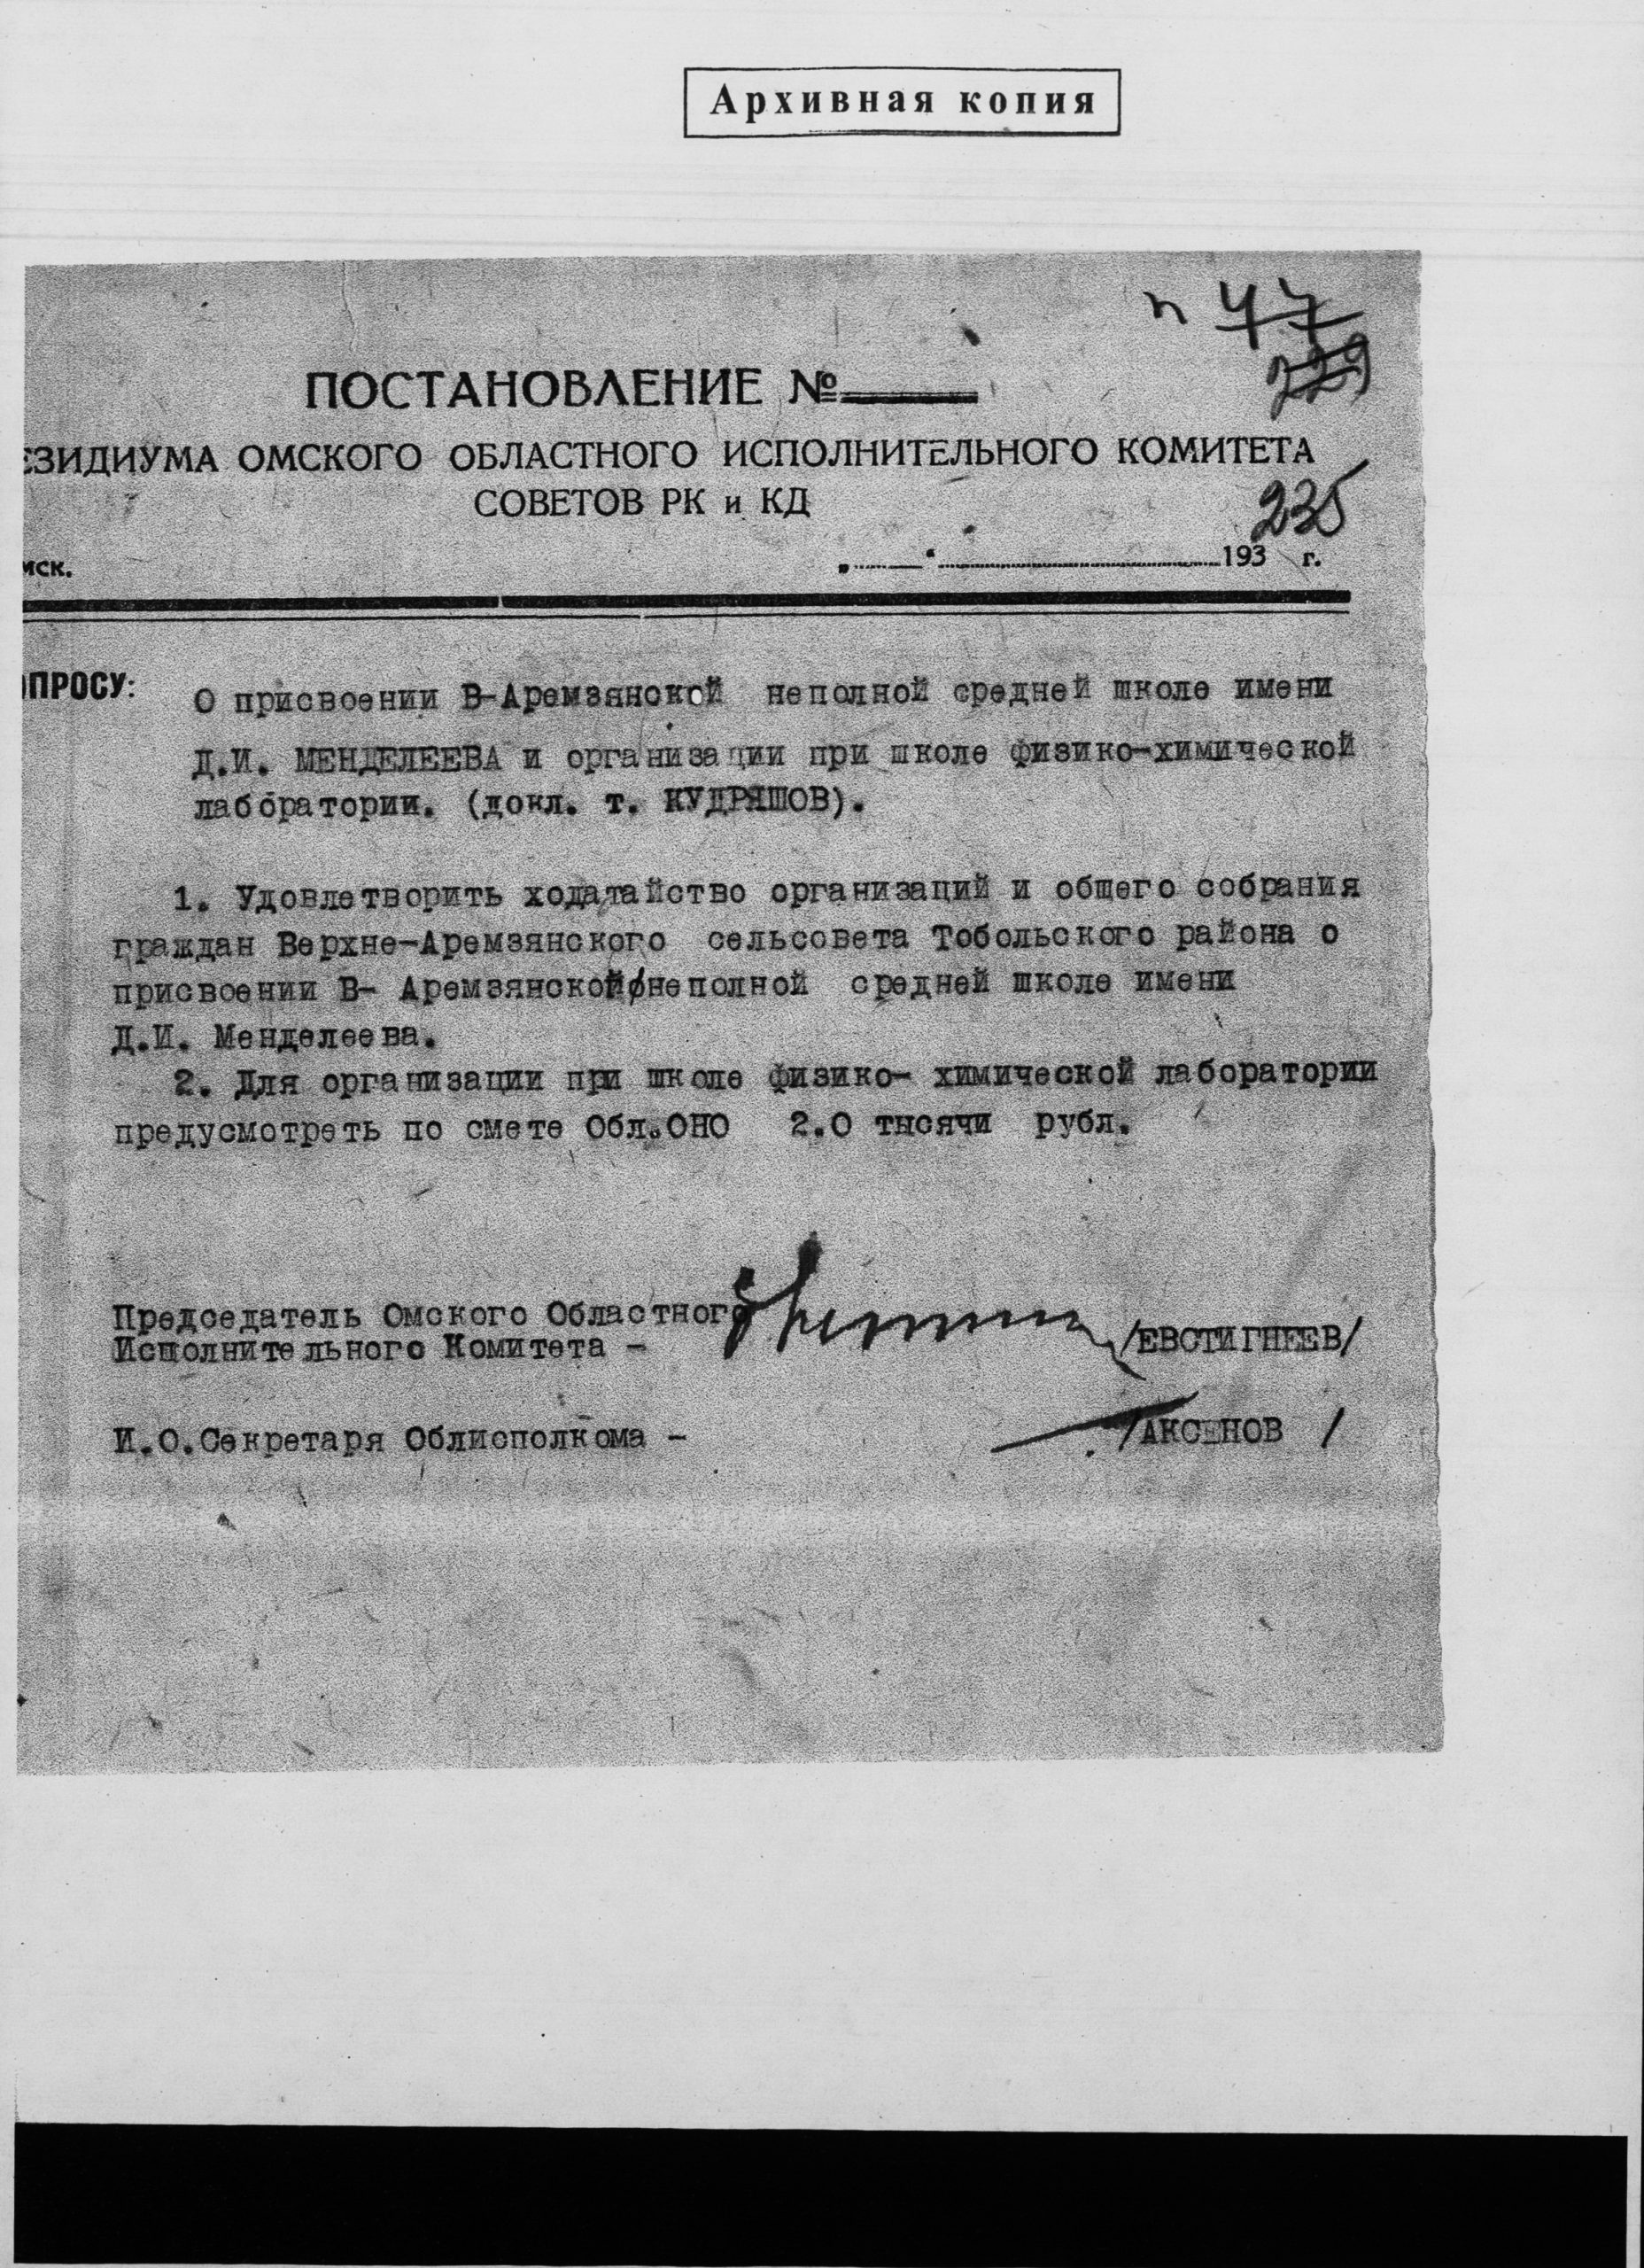 Архивная копия постановления о присвоении имени Д.И. Менделеева